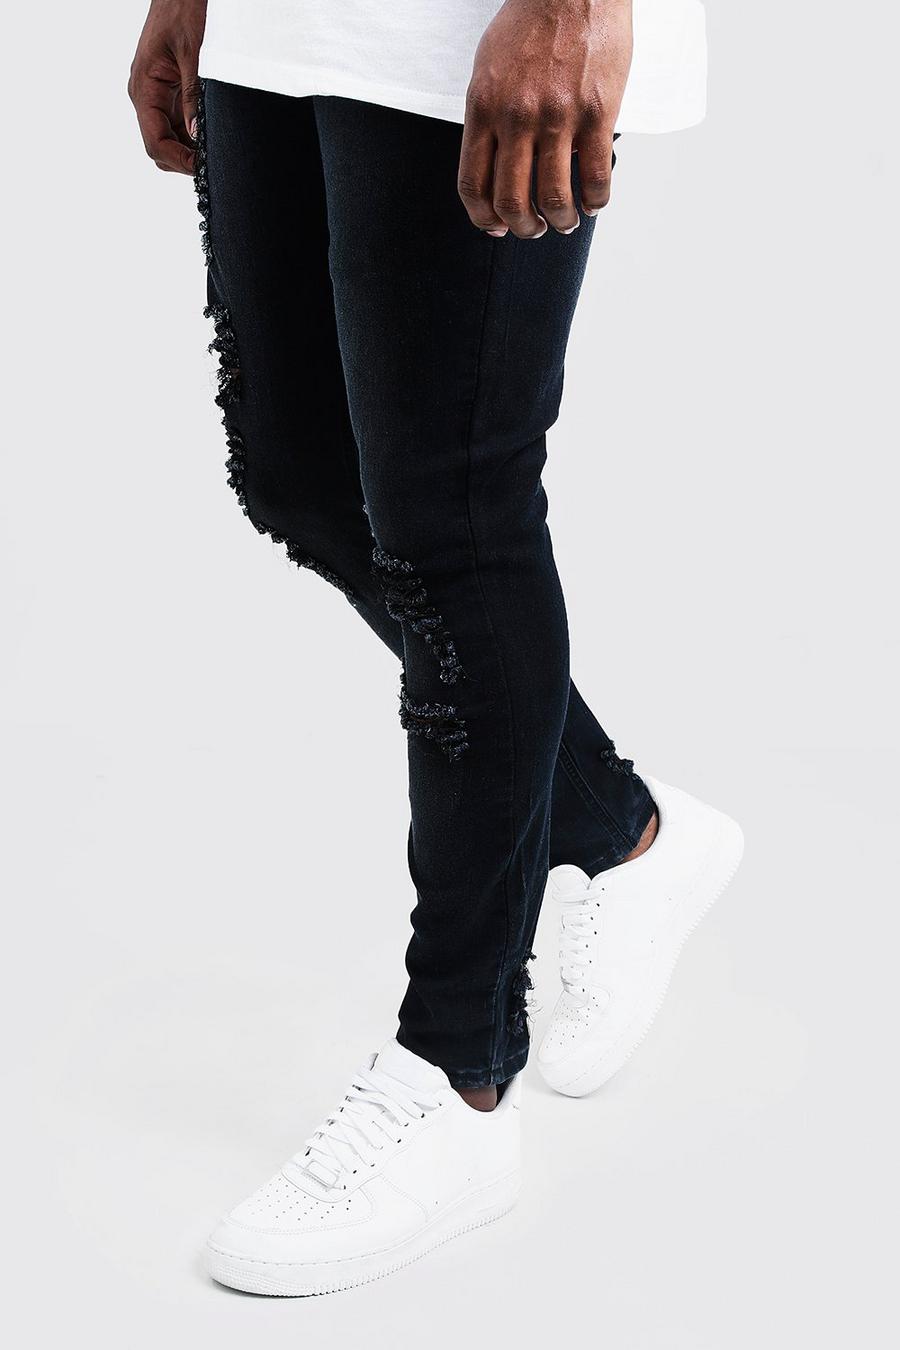 פחם gris מכנסי סקיני ג'ינס עם קרעים לגברים גדולים וגבוהים